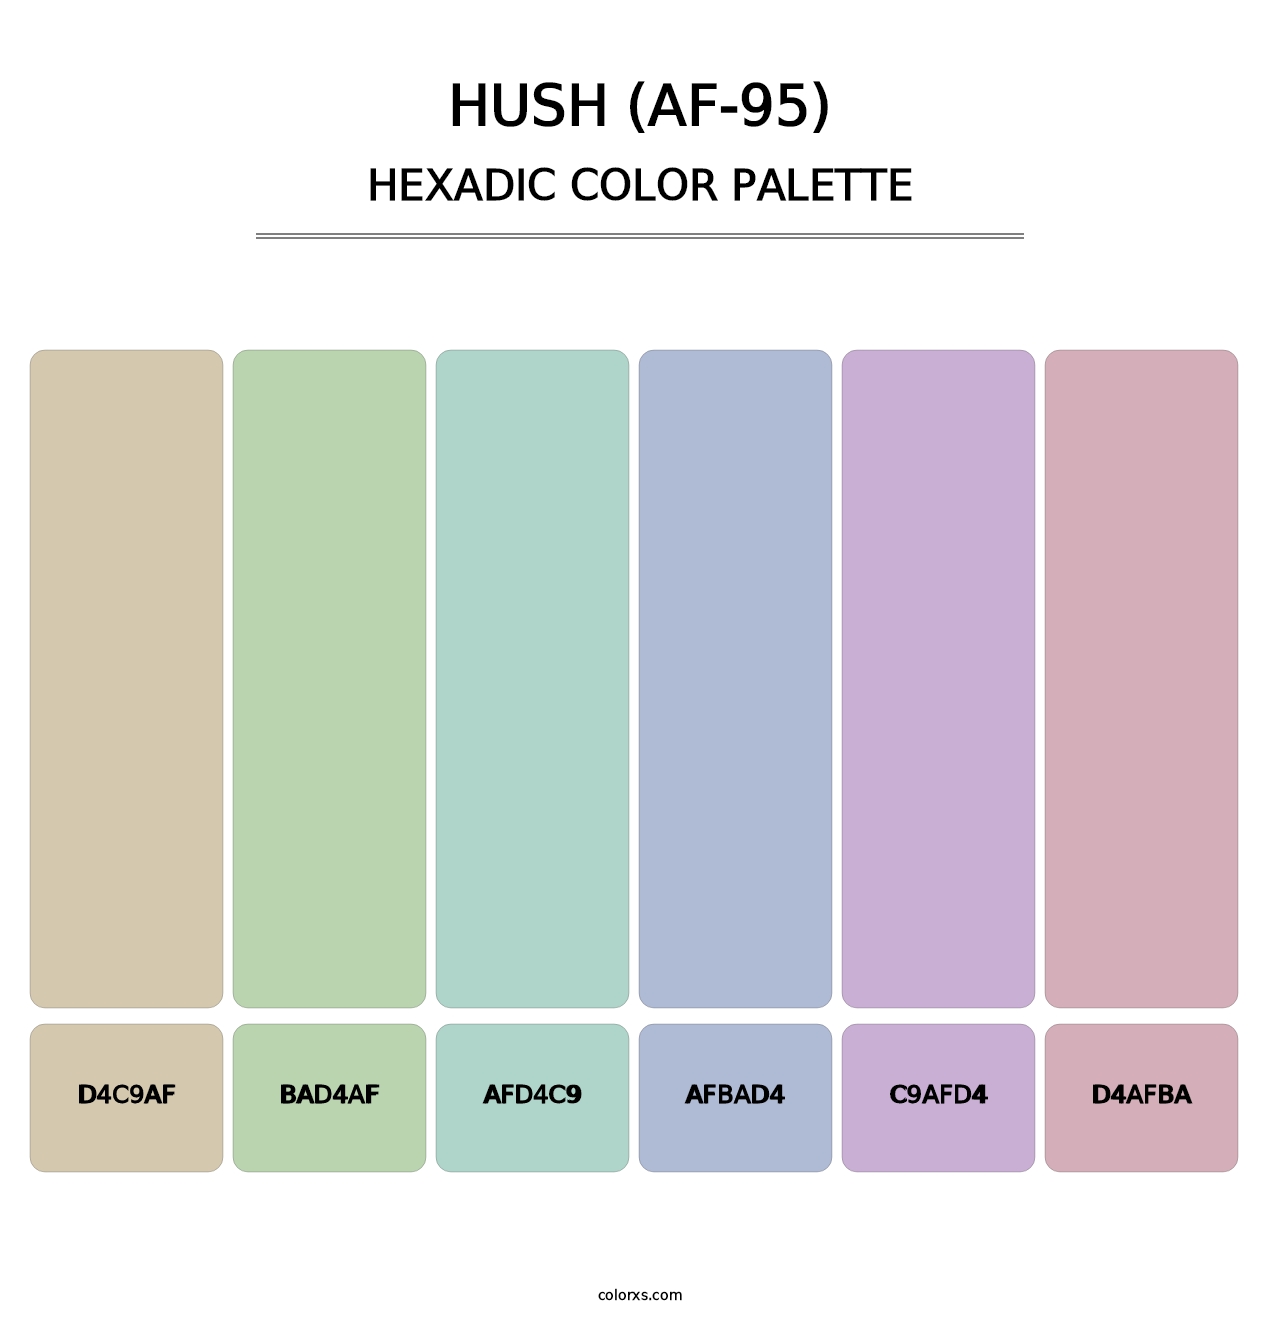 Hush (AF-95) - Hexadic Color Palette